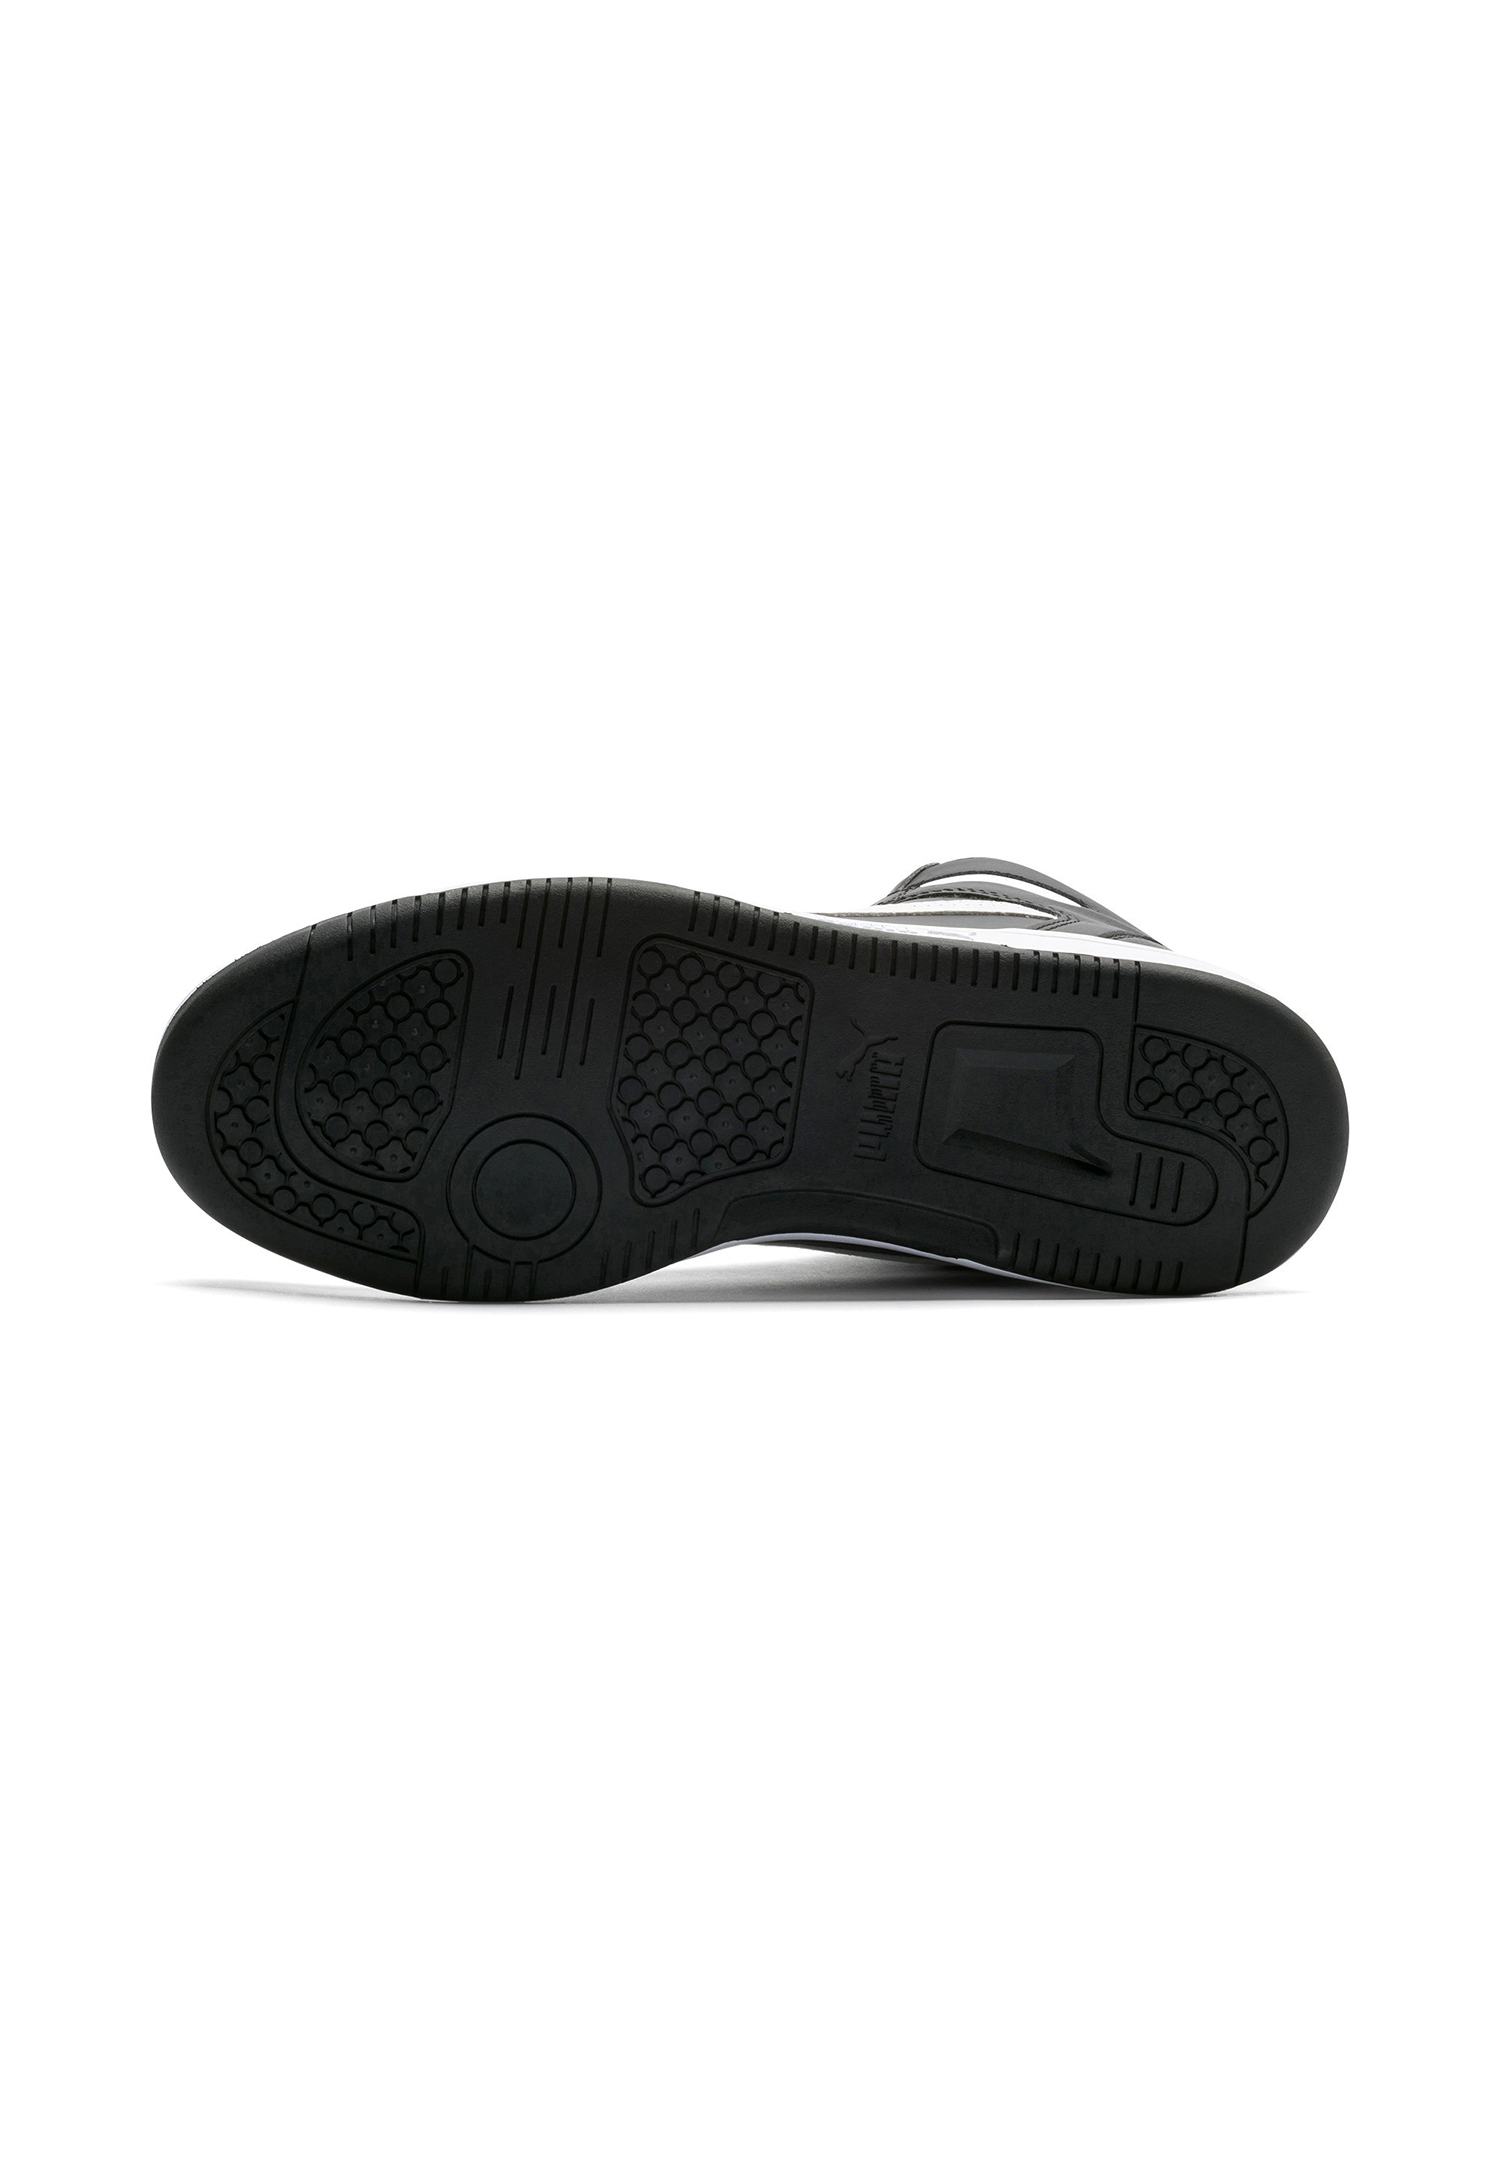 Puma Rebound LayUp SL Hoher Sneaker Stiefel Boots Herren Sneaker 369573